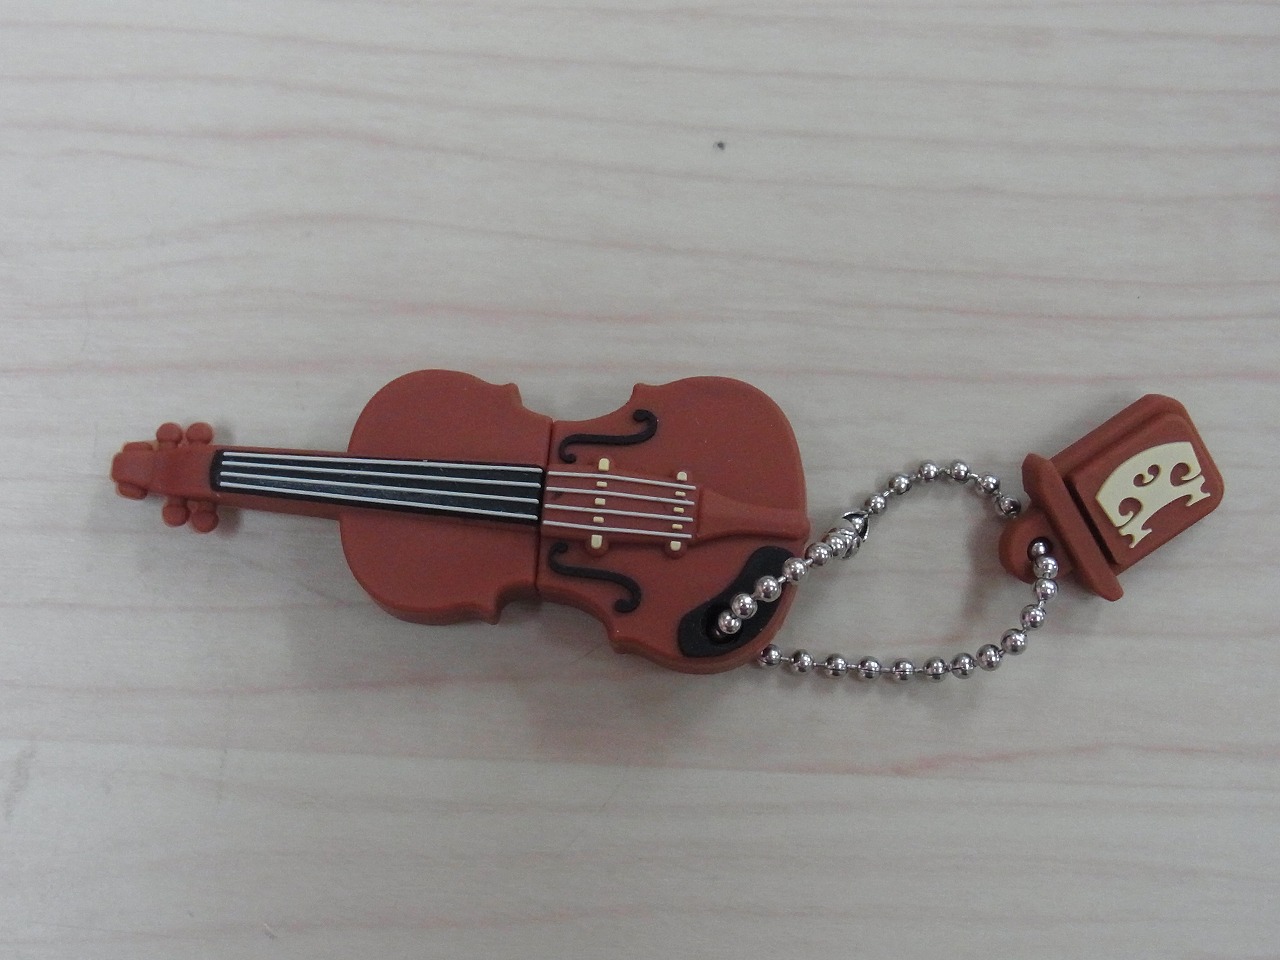 USBメモリ♪バイオリン 2GB♪【プレゼントに最適♪】 音楽雑貨 音楽グッズ  <br>音楽発表会 記念品 プレゼントに最適 ♪